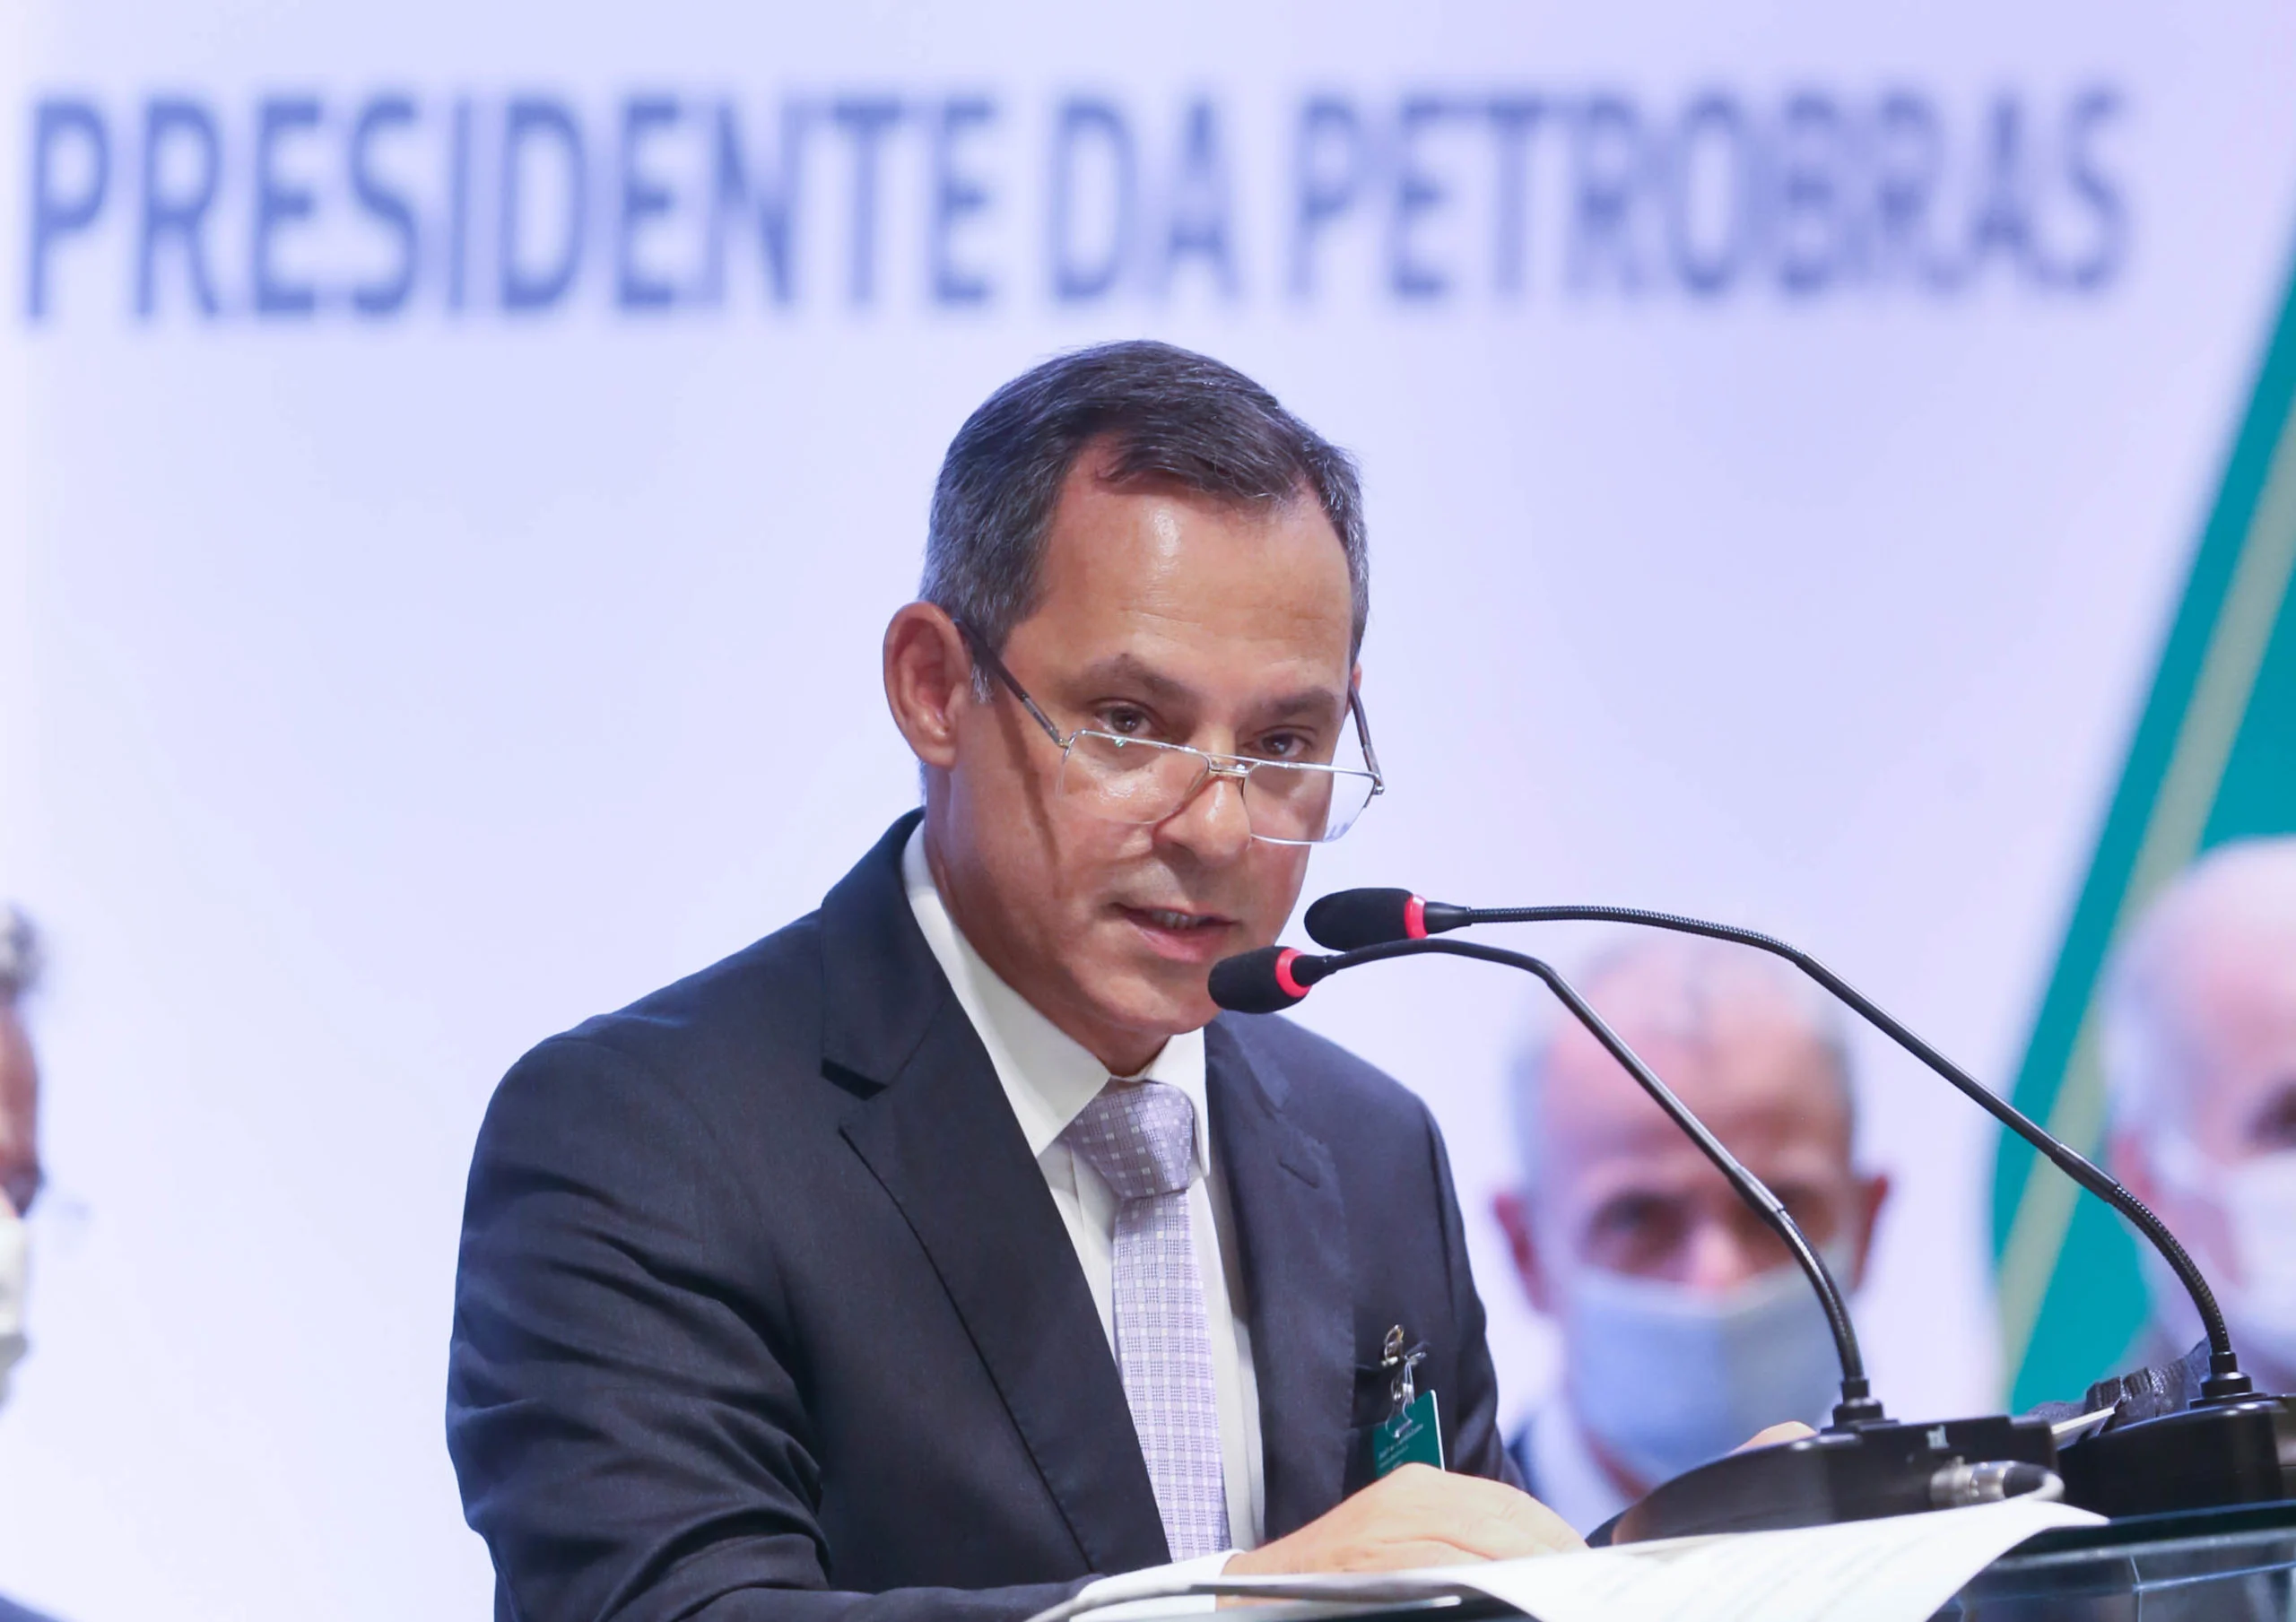 Câmara aprova audiência sobre tributação e preço dos combustíveis e convida José Mauro Coelho (na foto), no cargo há menos de um mês